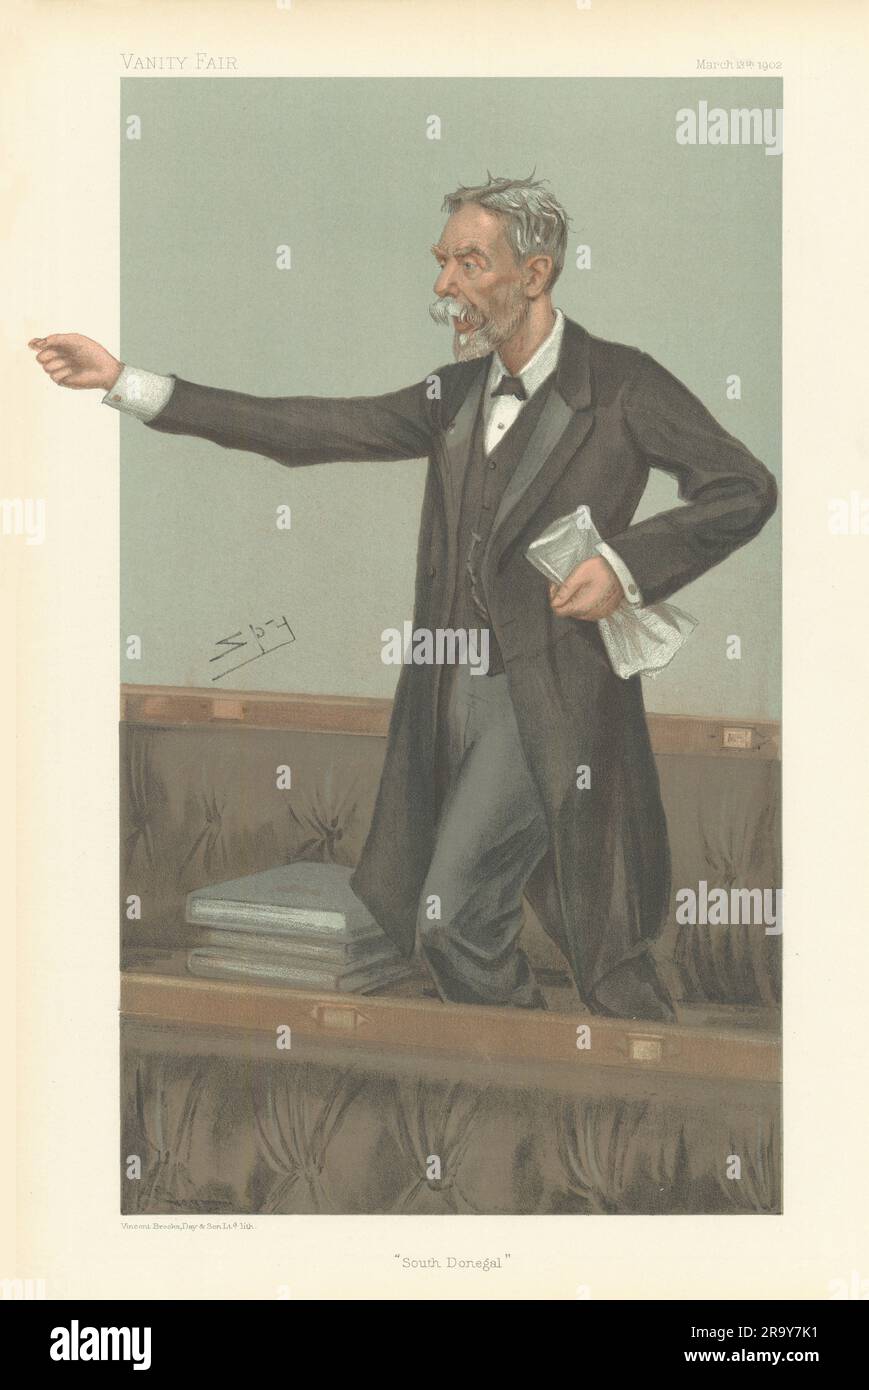 VANITY FAIR SPY CARTOON John Gordon Swift MacNeill 'South Donegal'. Ireland 1902 Stock Photo